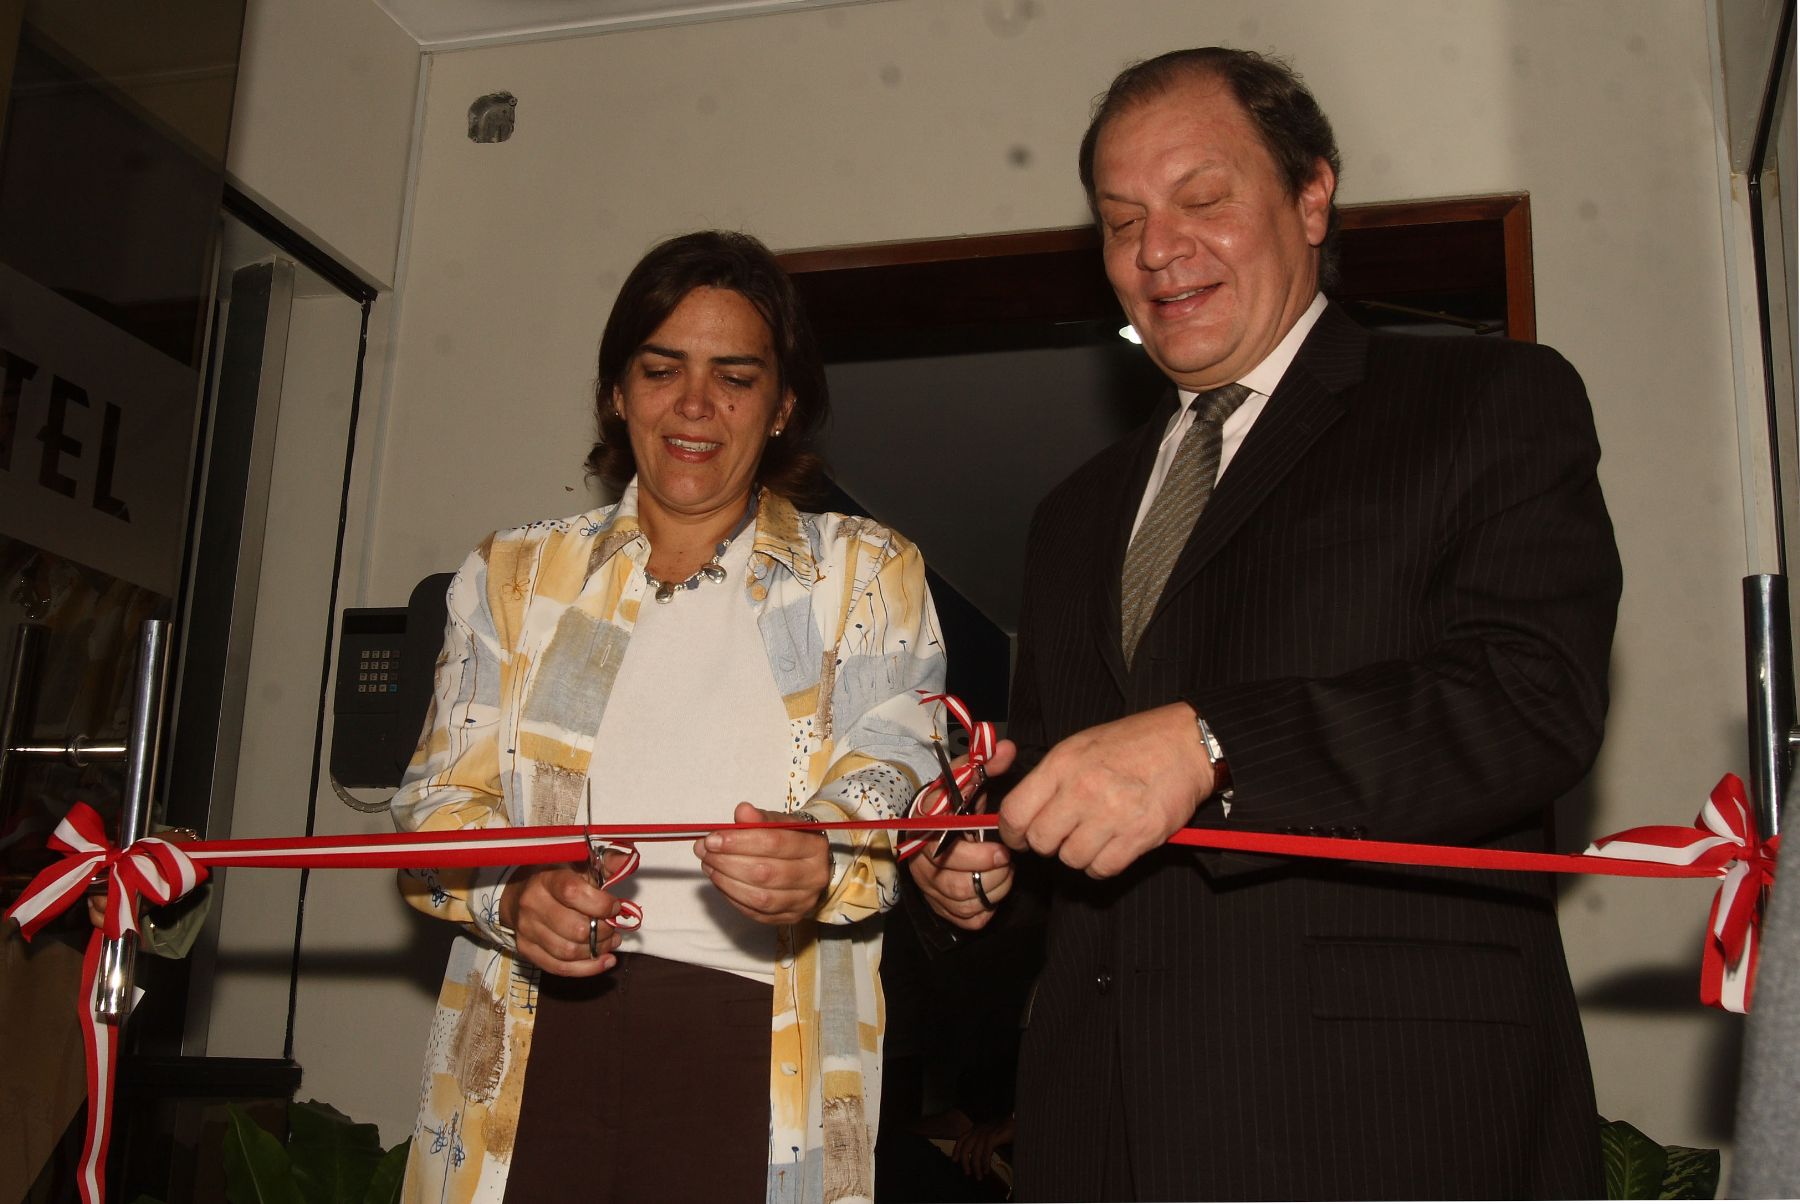 Ministra Verónica Zavala, inaugura oficina de atención al usuario de Osiptel. Foto:ANDINA/Héctor Vinces